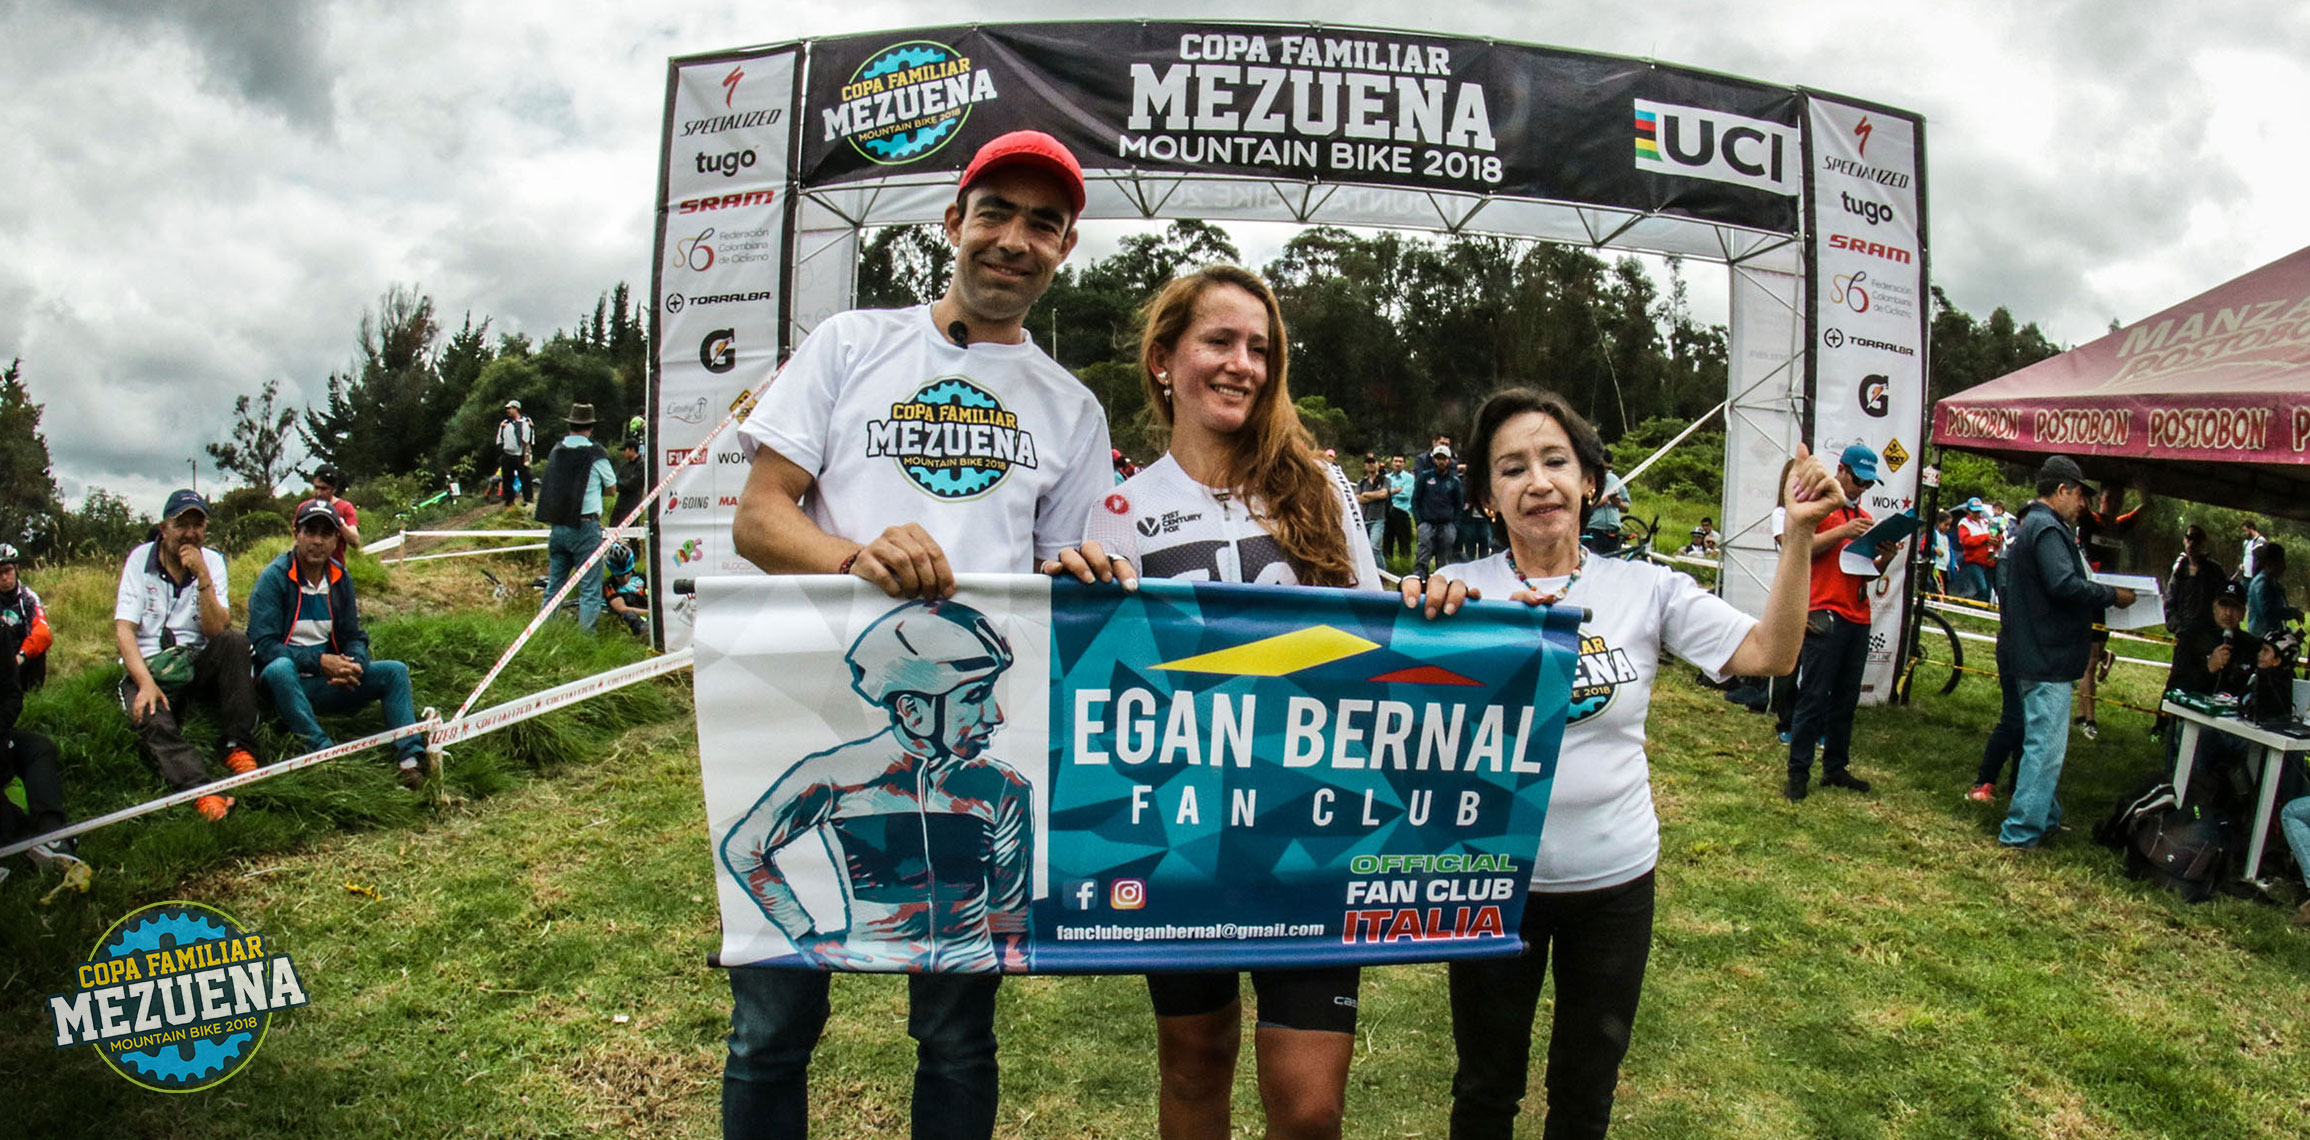 Anuncio de nueva Colaboración Egan Bernal y su Club de Fans Oficial con los Proyectos de la Fundación Mezuena